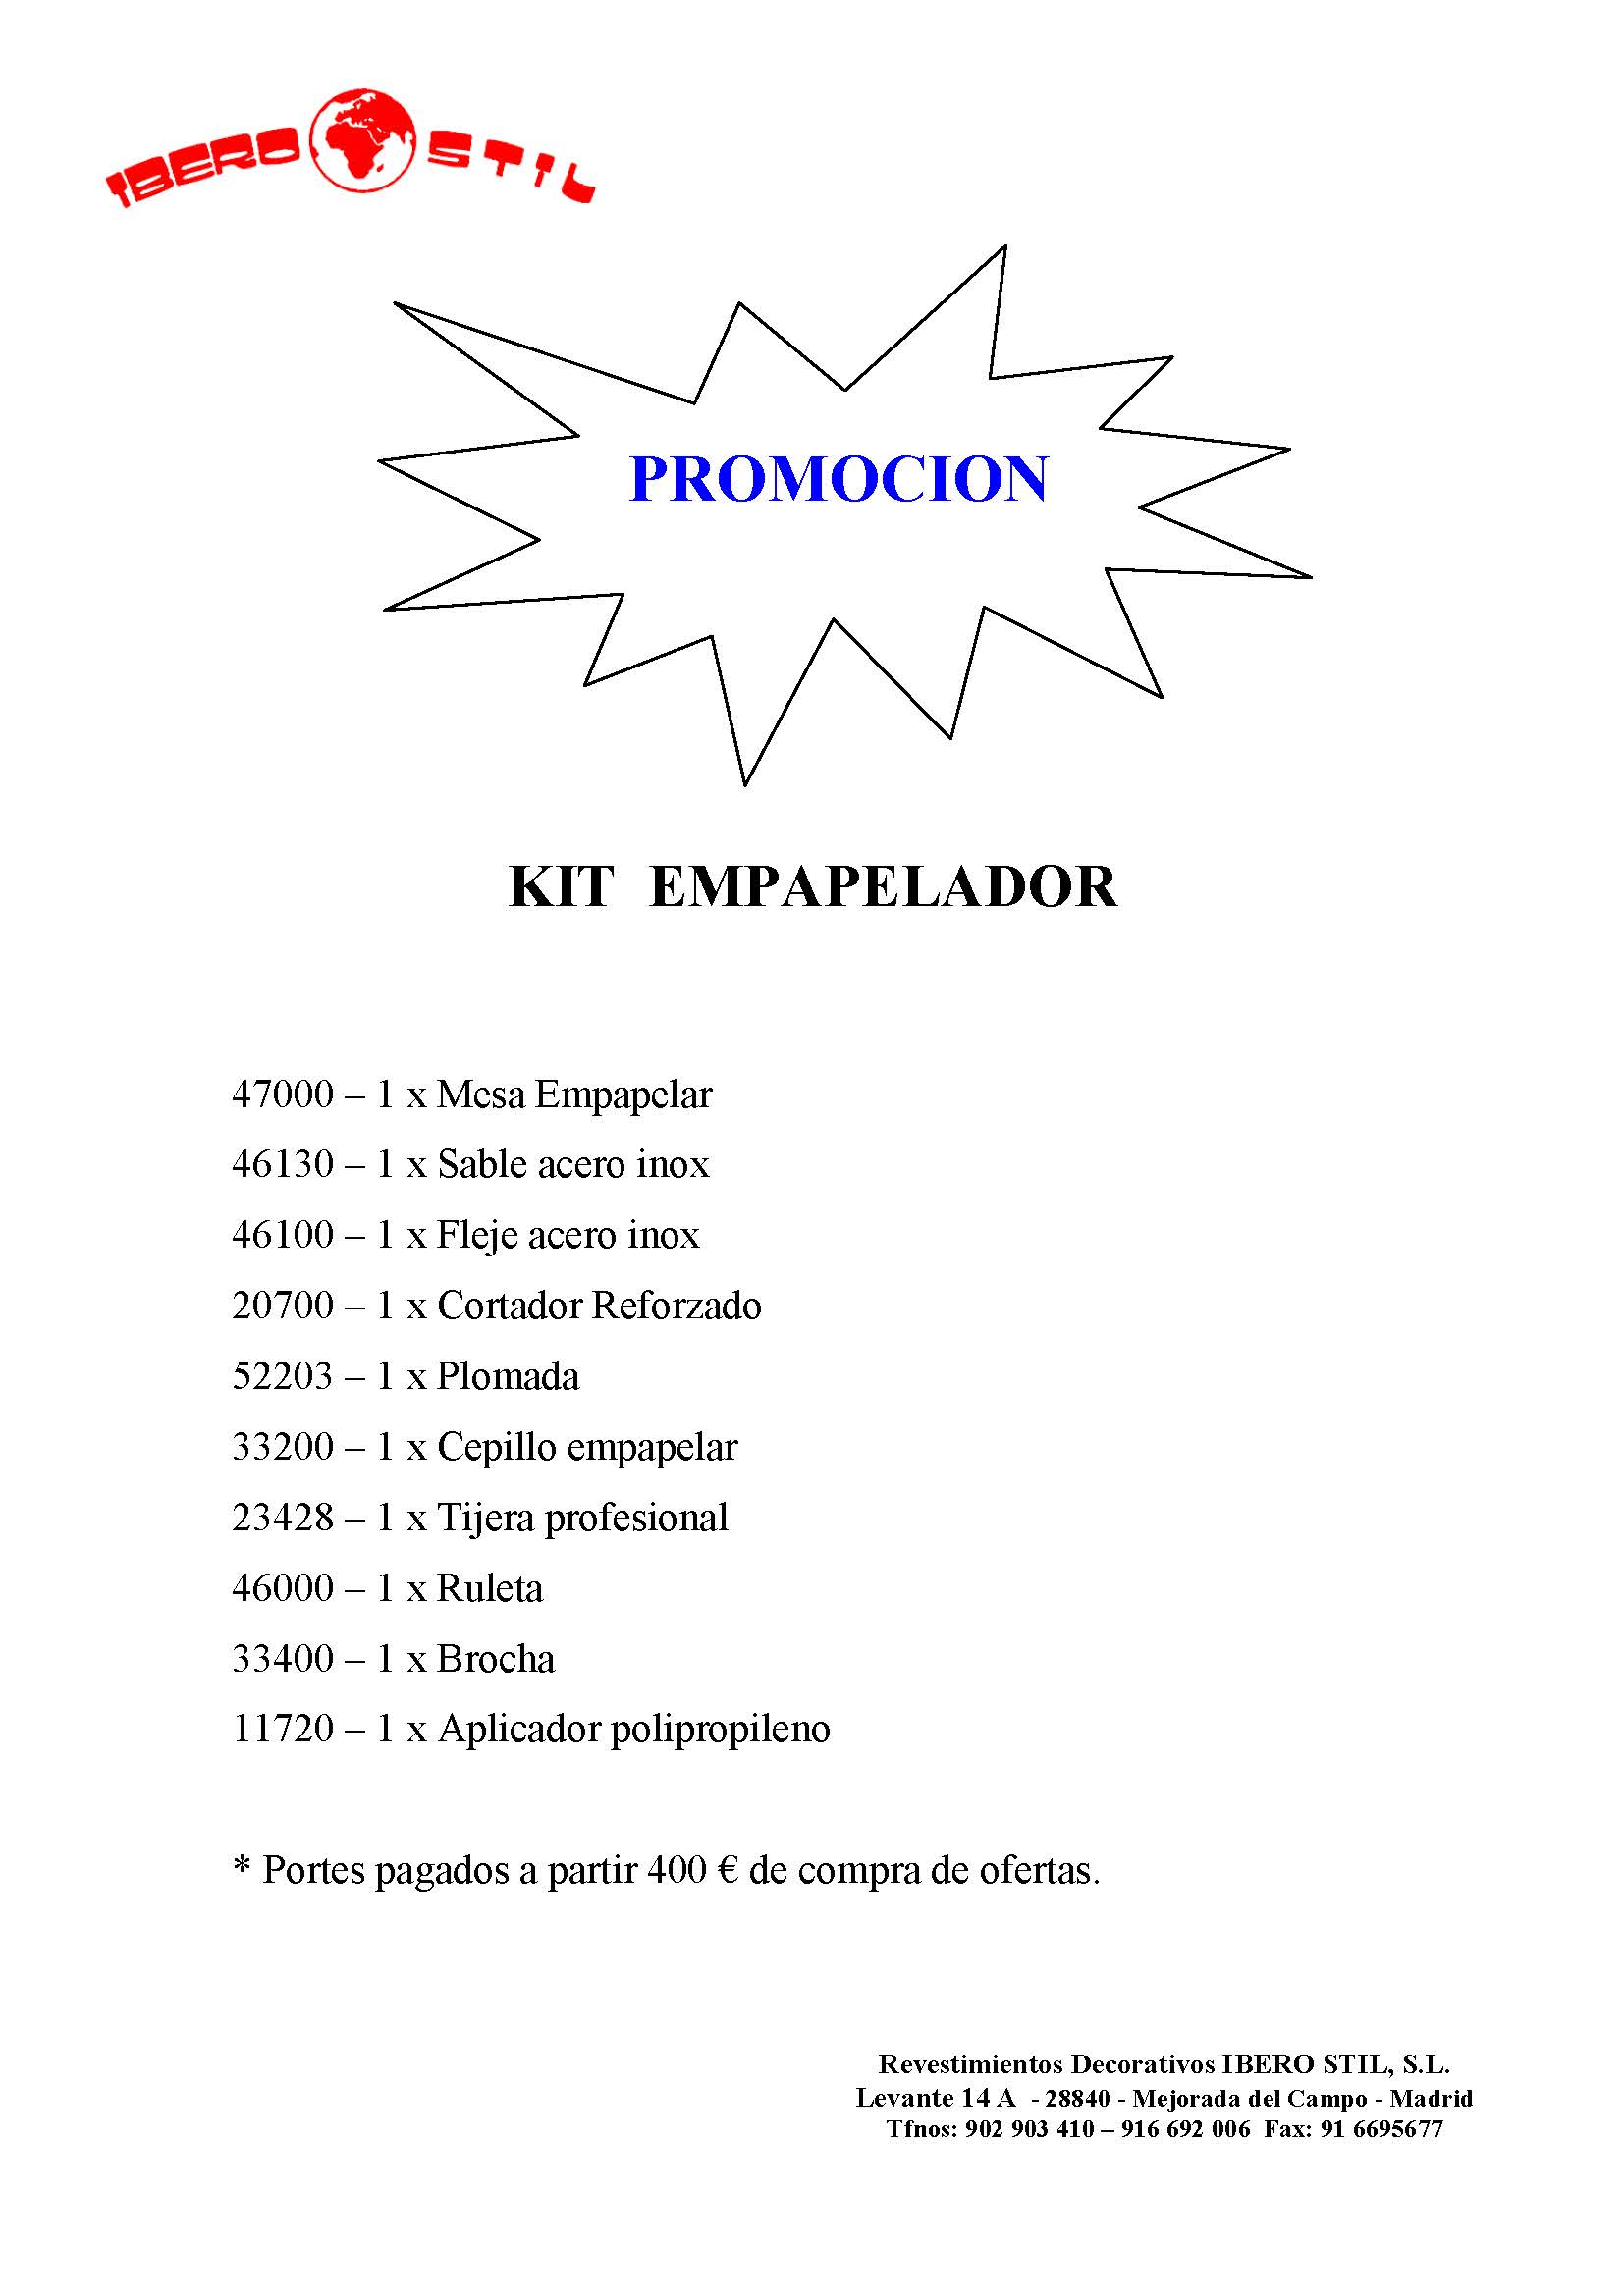 Kit_Empapelador.jpg